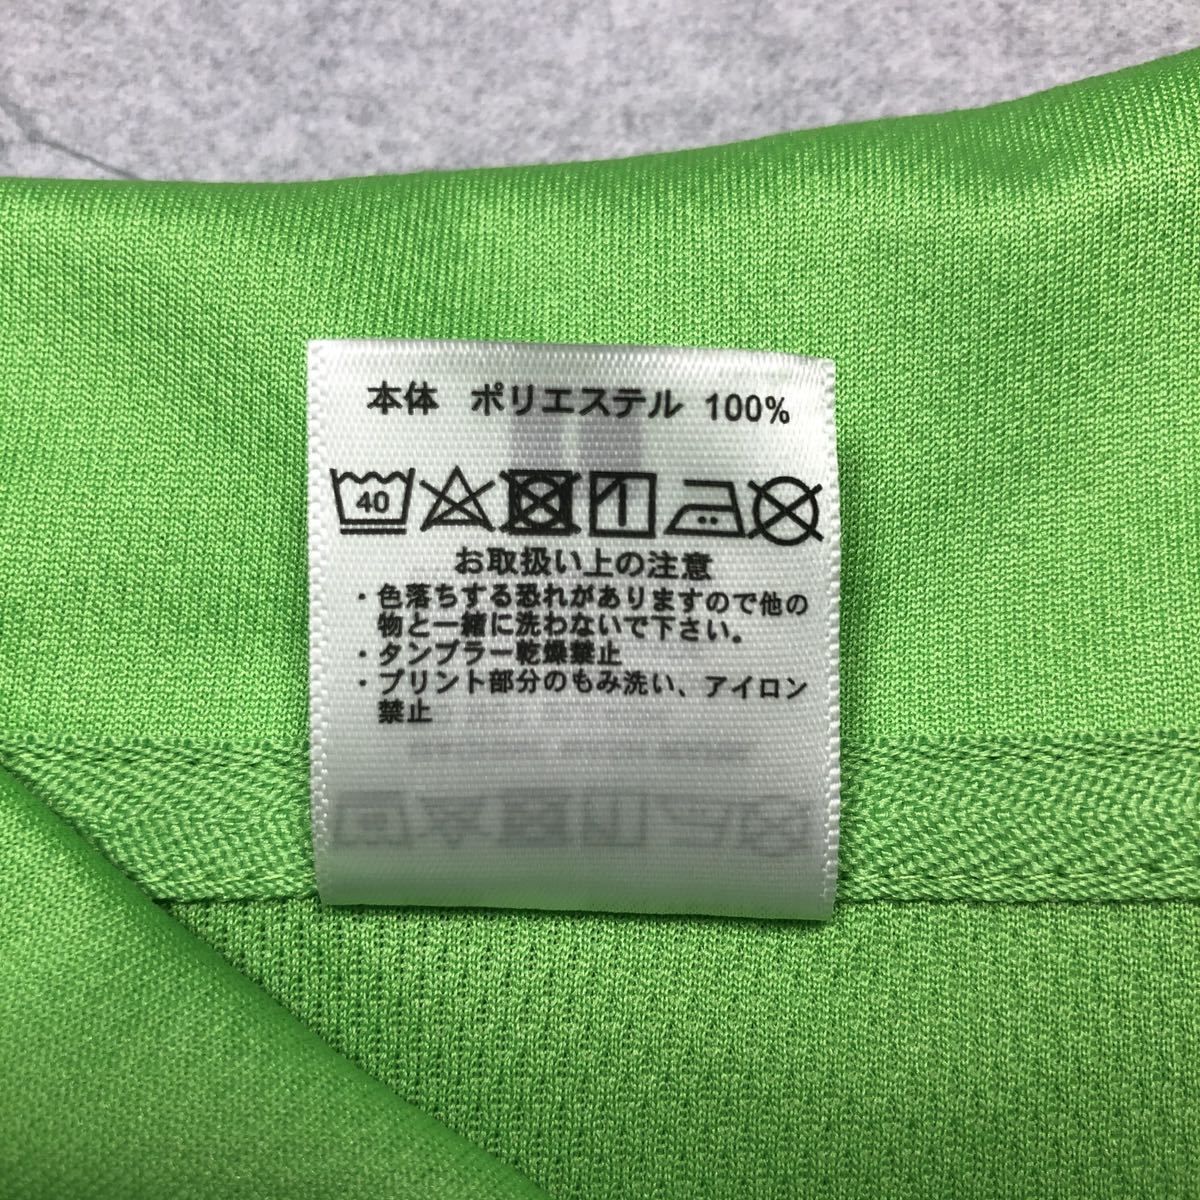 【新品】LIFEMAX ライフマックス 半袖 ドライポロシャツ ポロシャツ メンズ レディース 男女兼用 通気性 グリーン 緑 黄緑 SS